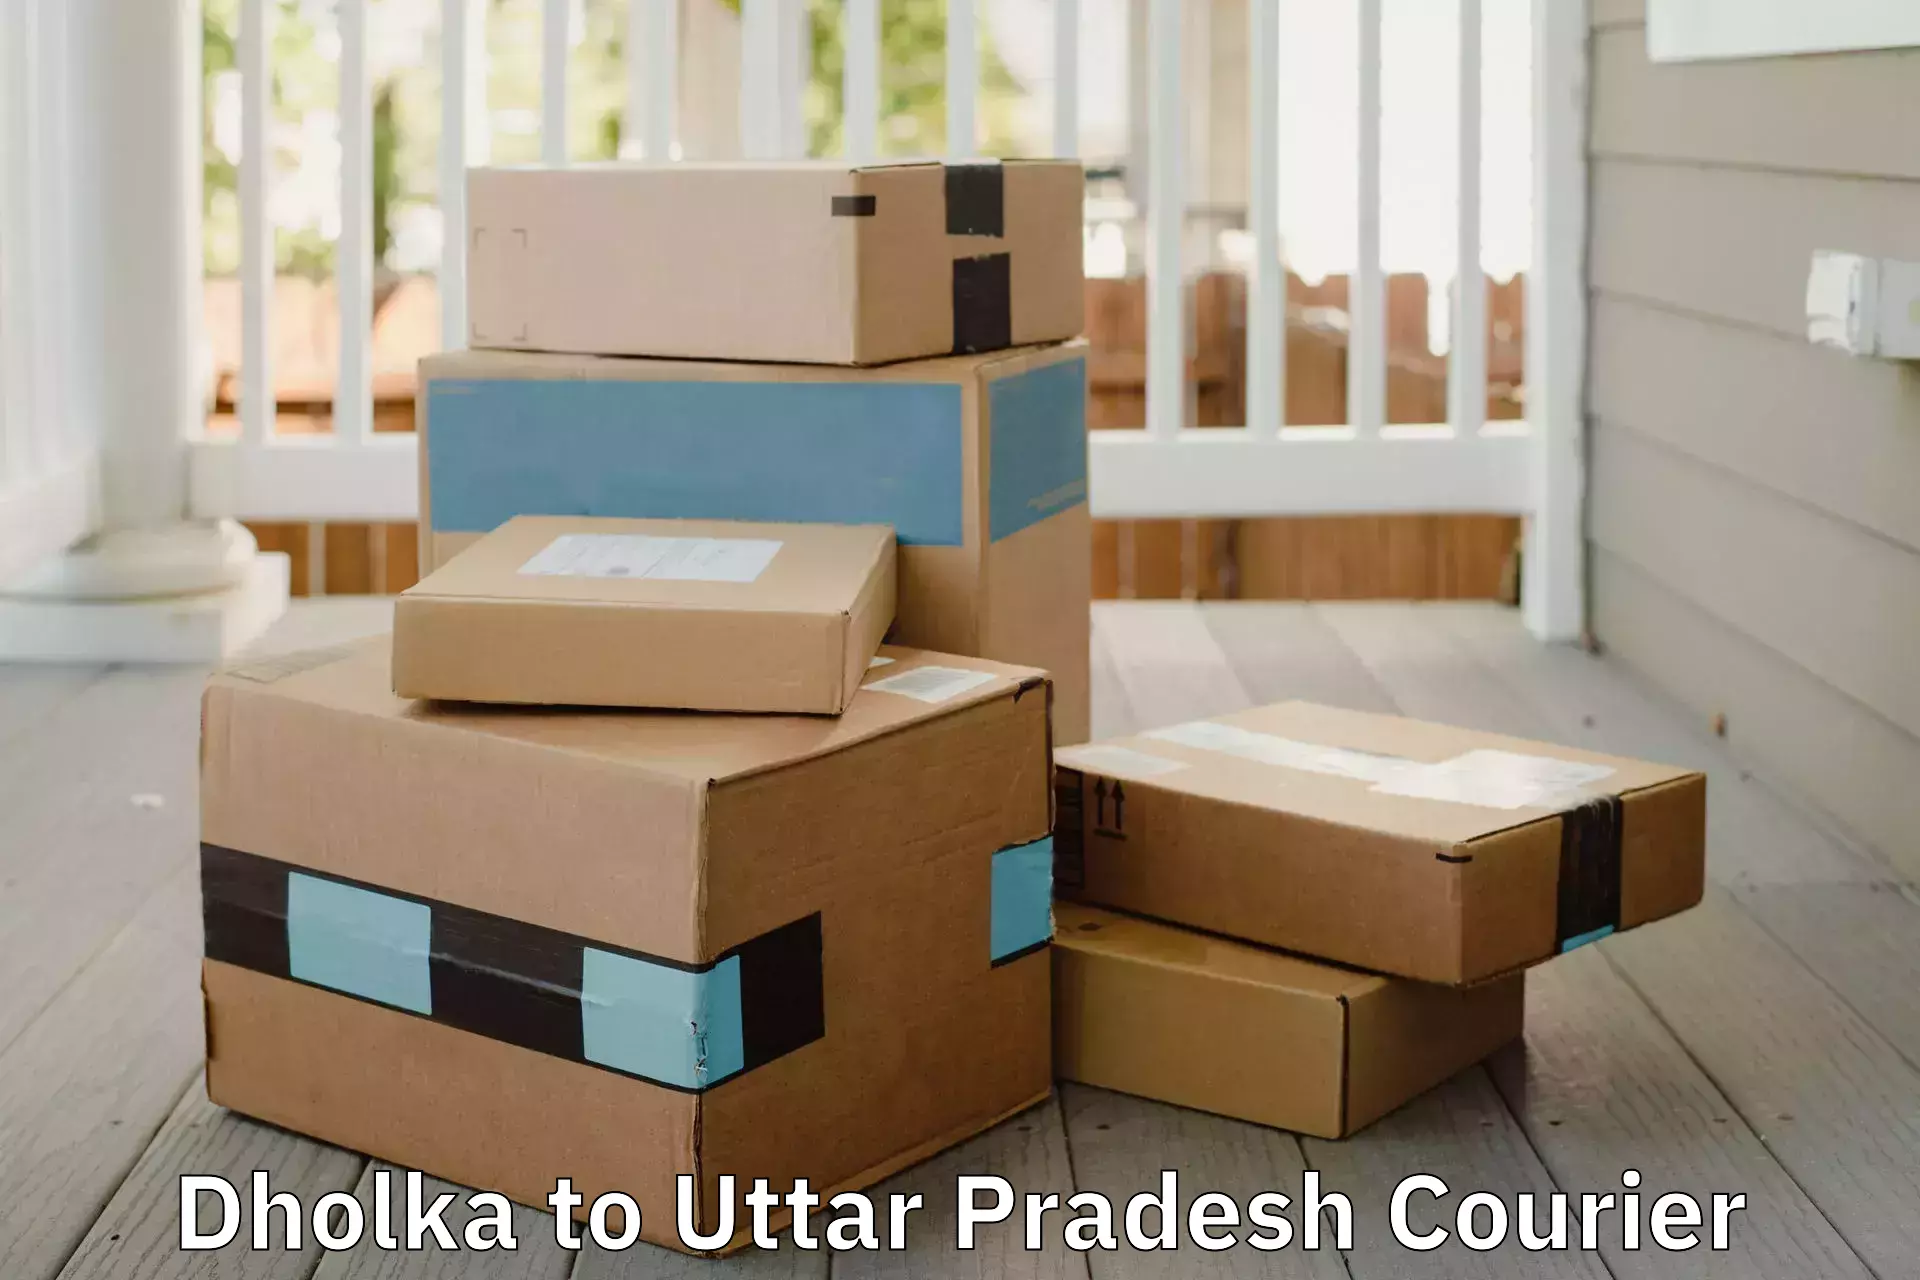 Efficient furniture shifting Dholka to Varanasi